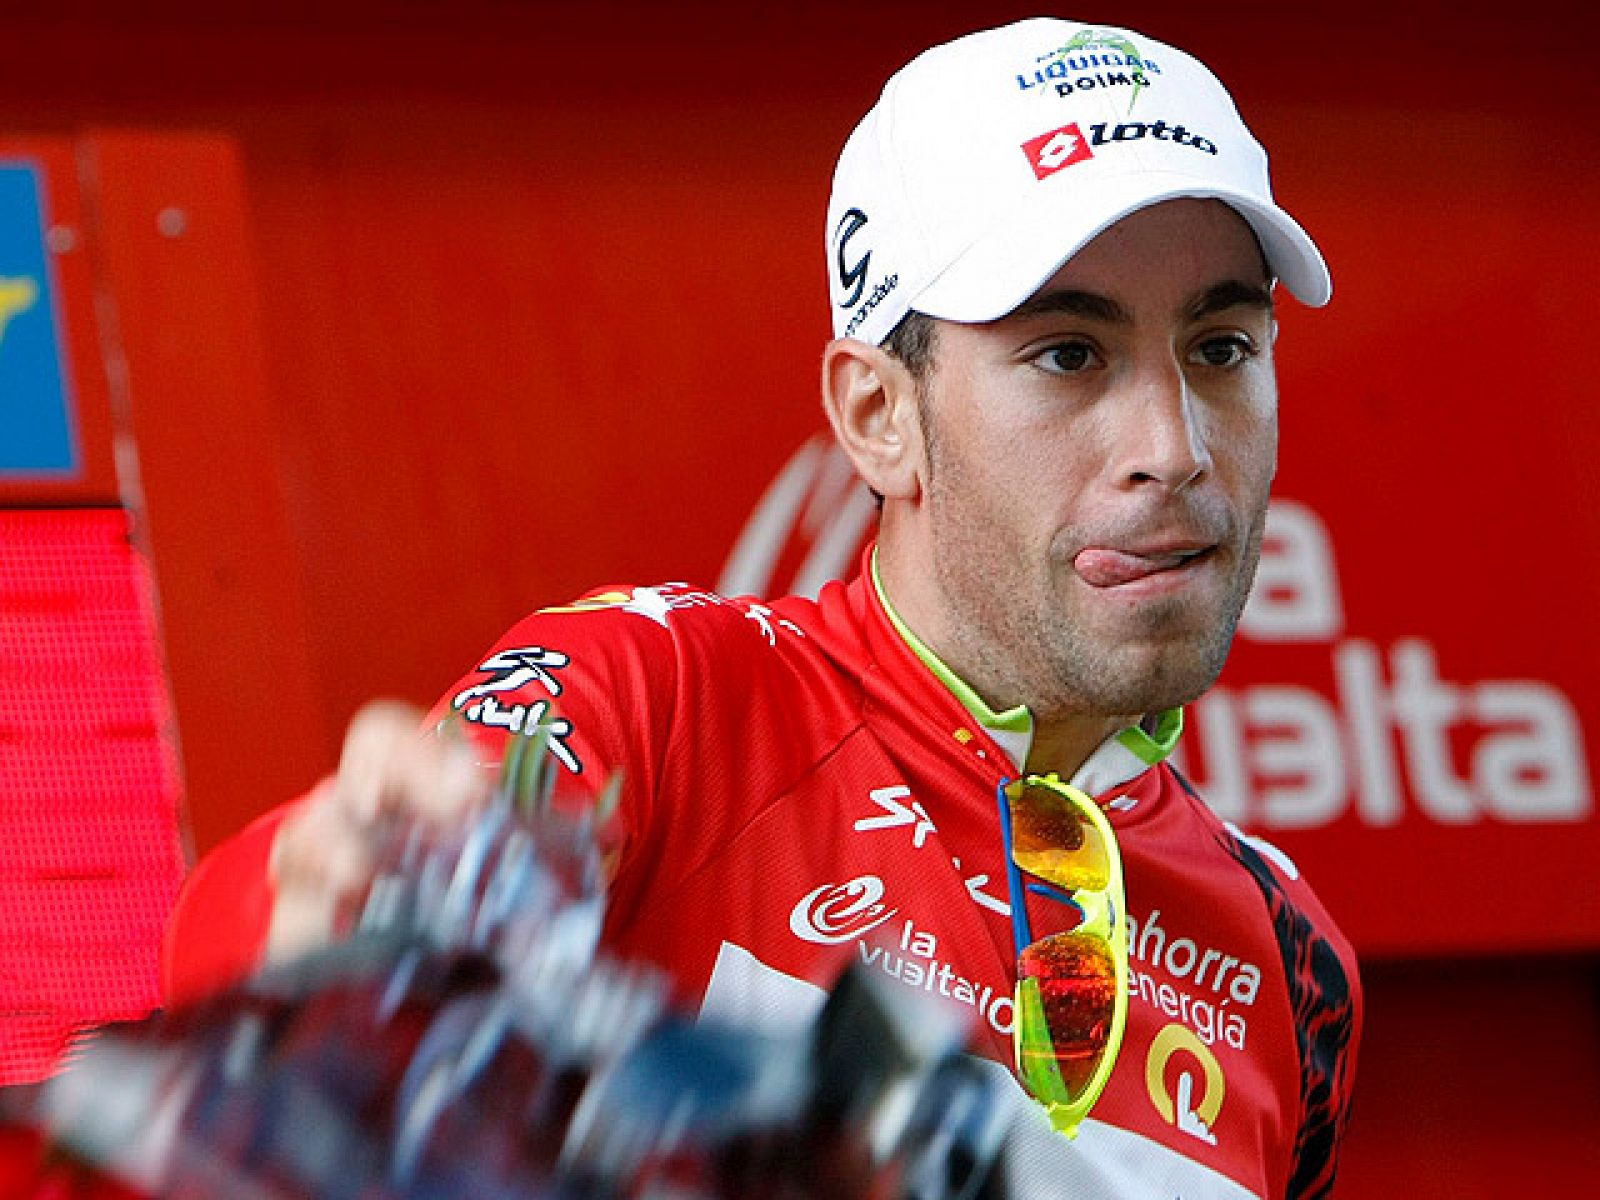 El líder de la Vuelta a España, el italiano Vincenzo Nibali (Liquigas), ha dicho que aunque el sábado, en la etapa con final en la Bola del Mundo, espera "el ataque de otros corredores, el único rival peligroso" para él y al "único" que tiene que "co